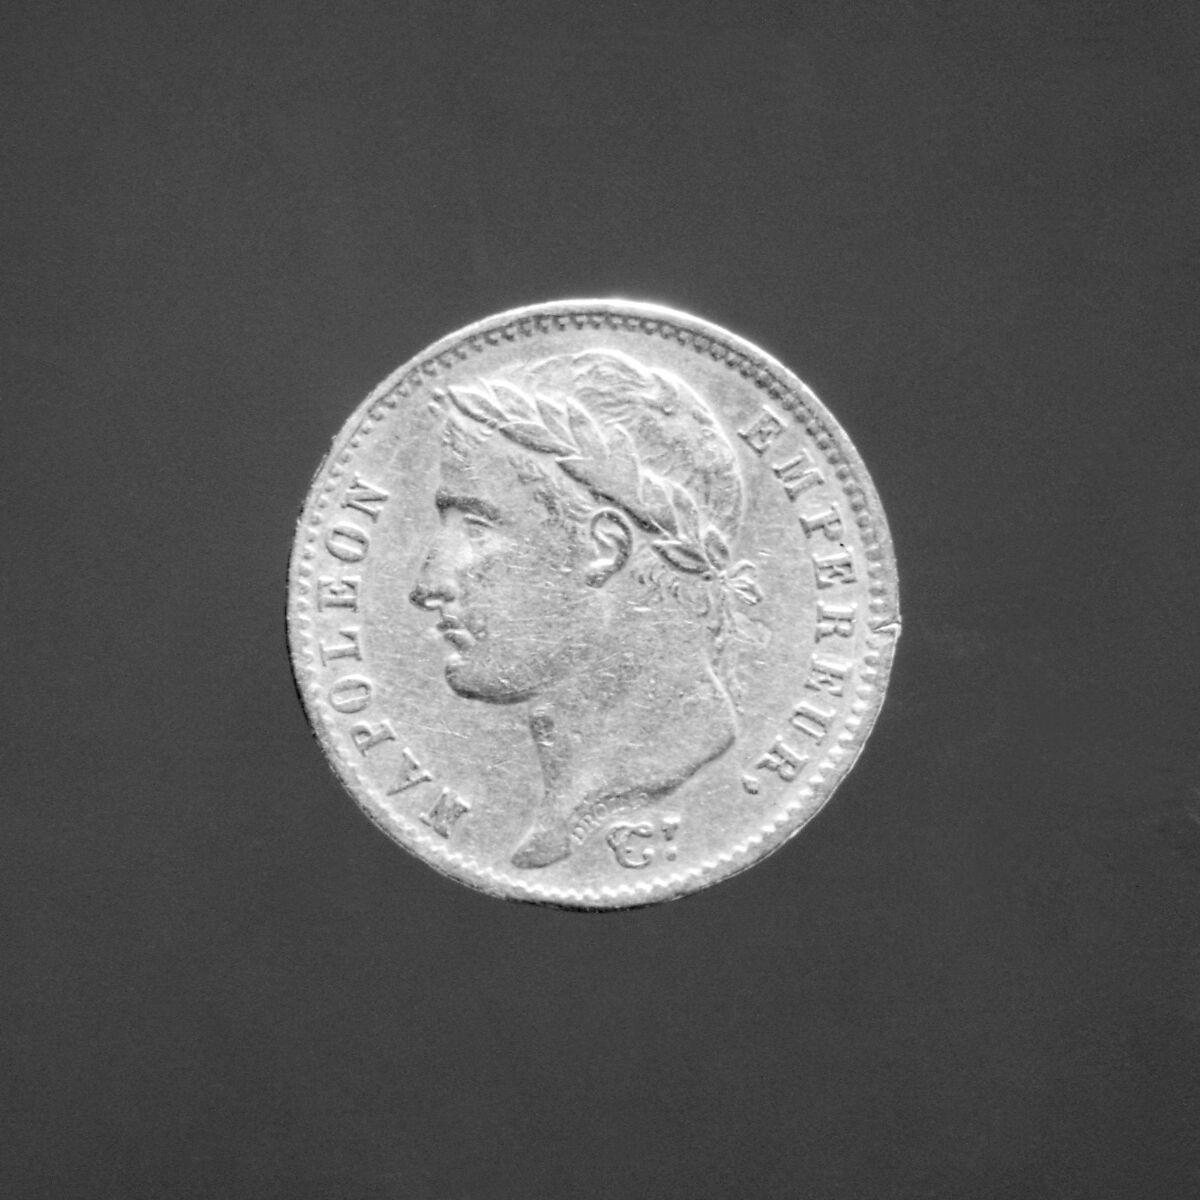 20-franc piece, Napoleon I, brockage reverse, Medalist: Jean-Pierre Droz (French, La Chaux-de-Fonds, Neuchâtel 1746–1823 Paris), Gold, French 